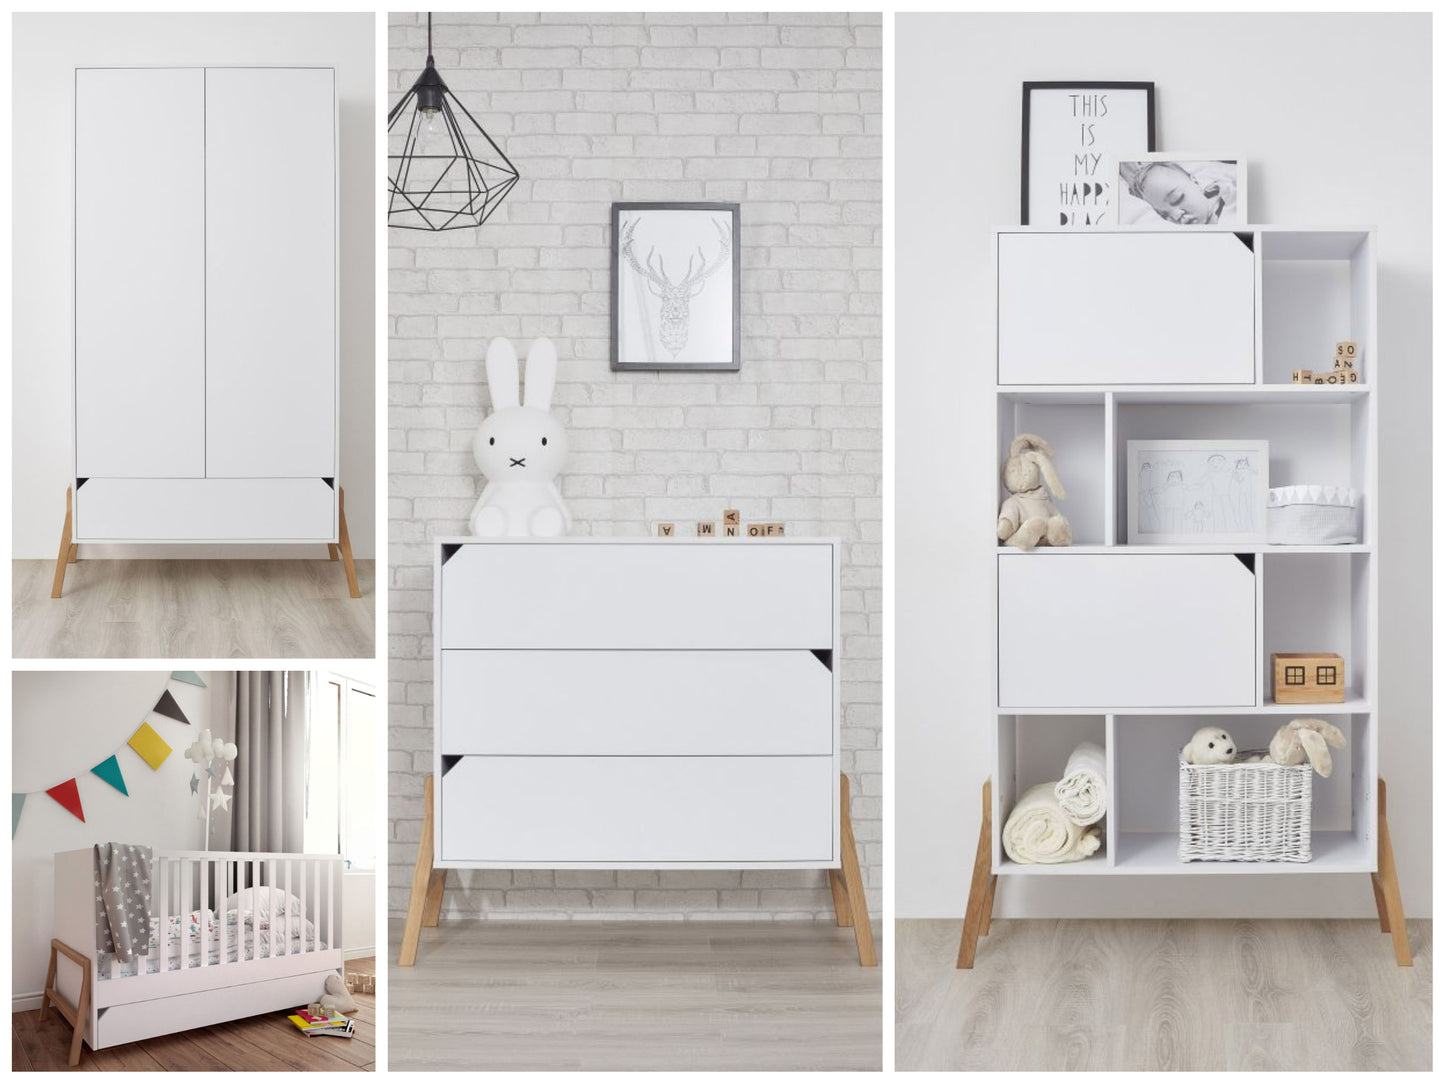 Babyzimmer Lotta Weiß: Babybett, Kommode, Regal, Kleiderschrank